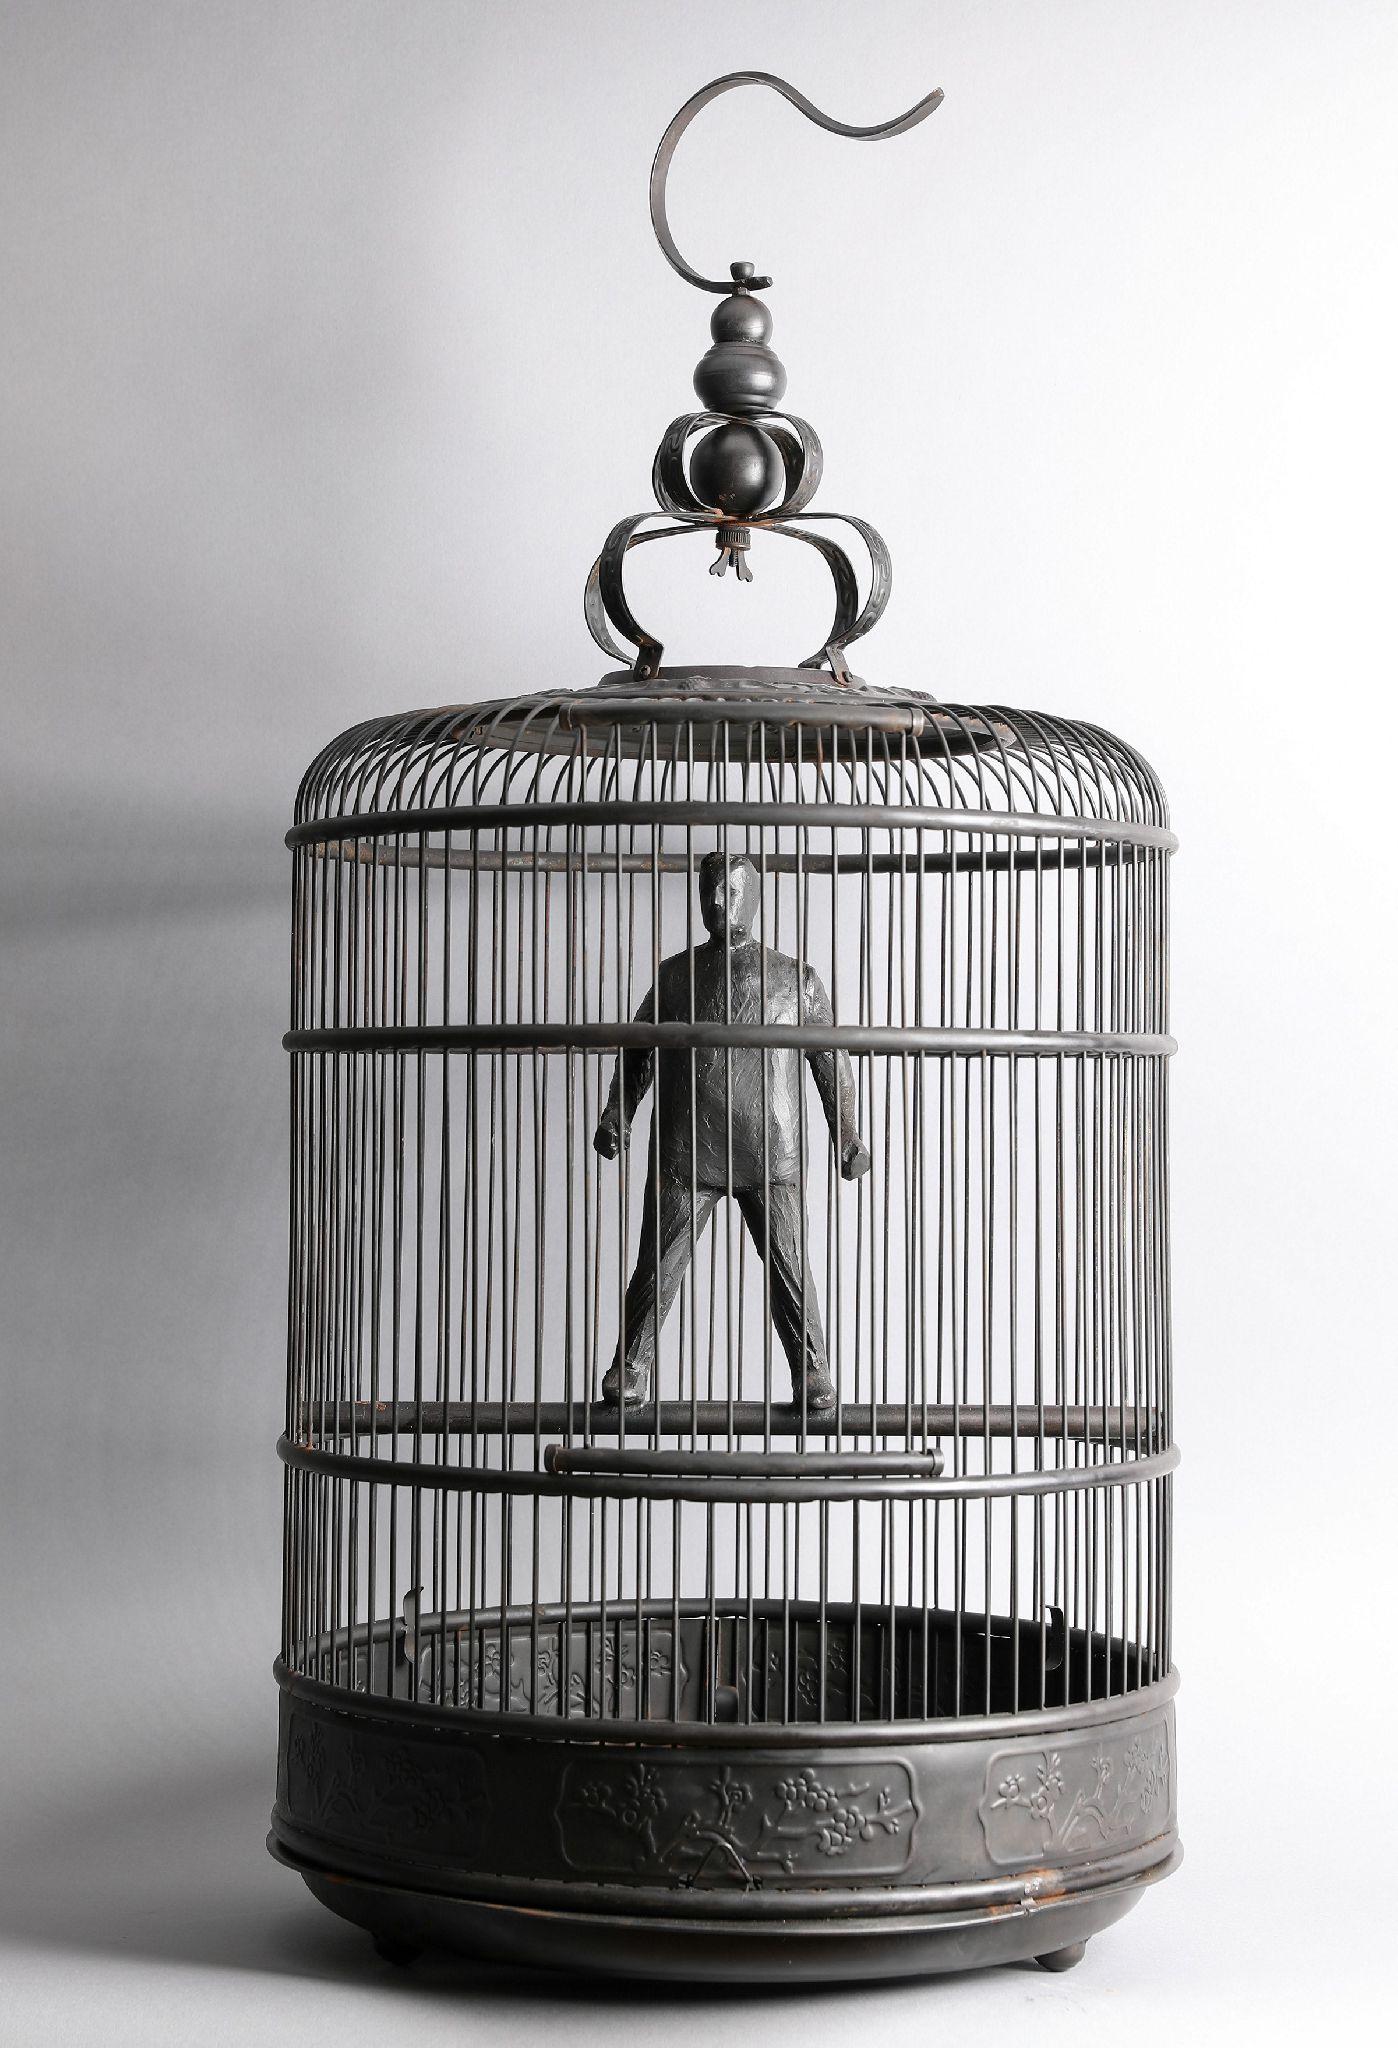 Jim Rennert Figurative Sculpture - Caged, not Conquered